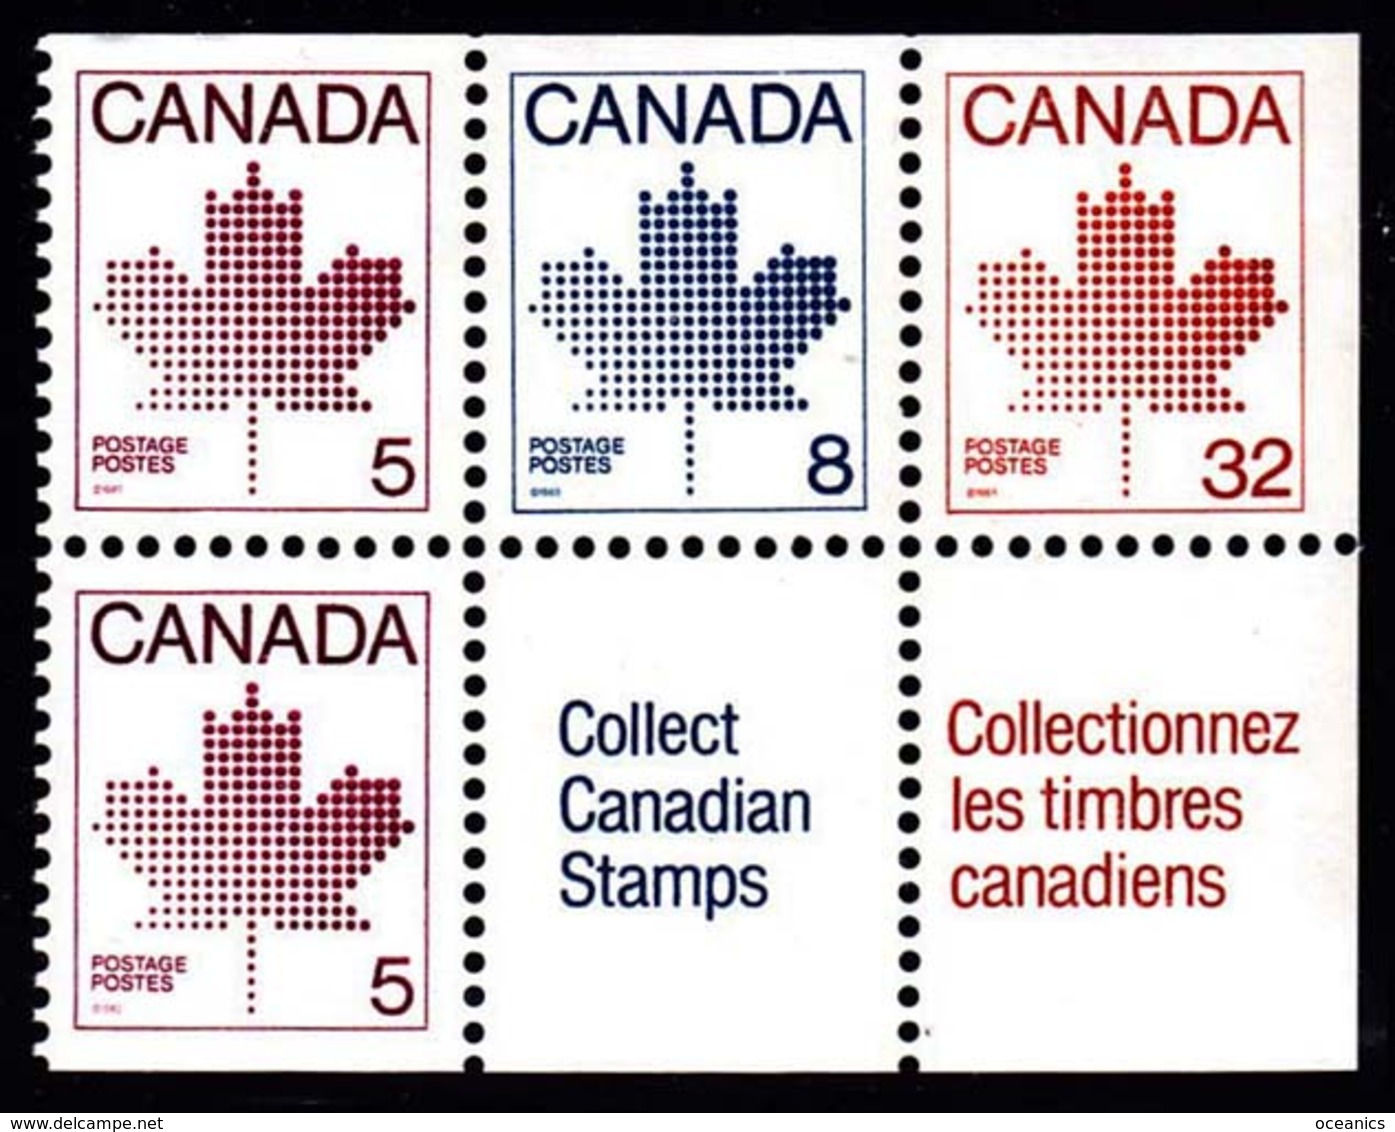 Canada (Scott No. 946 - Feuille D'érable / Maple Leaf) [**] Carnet / Booklet - Single Stamps